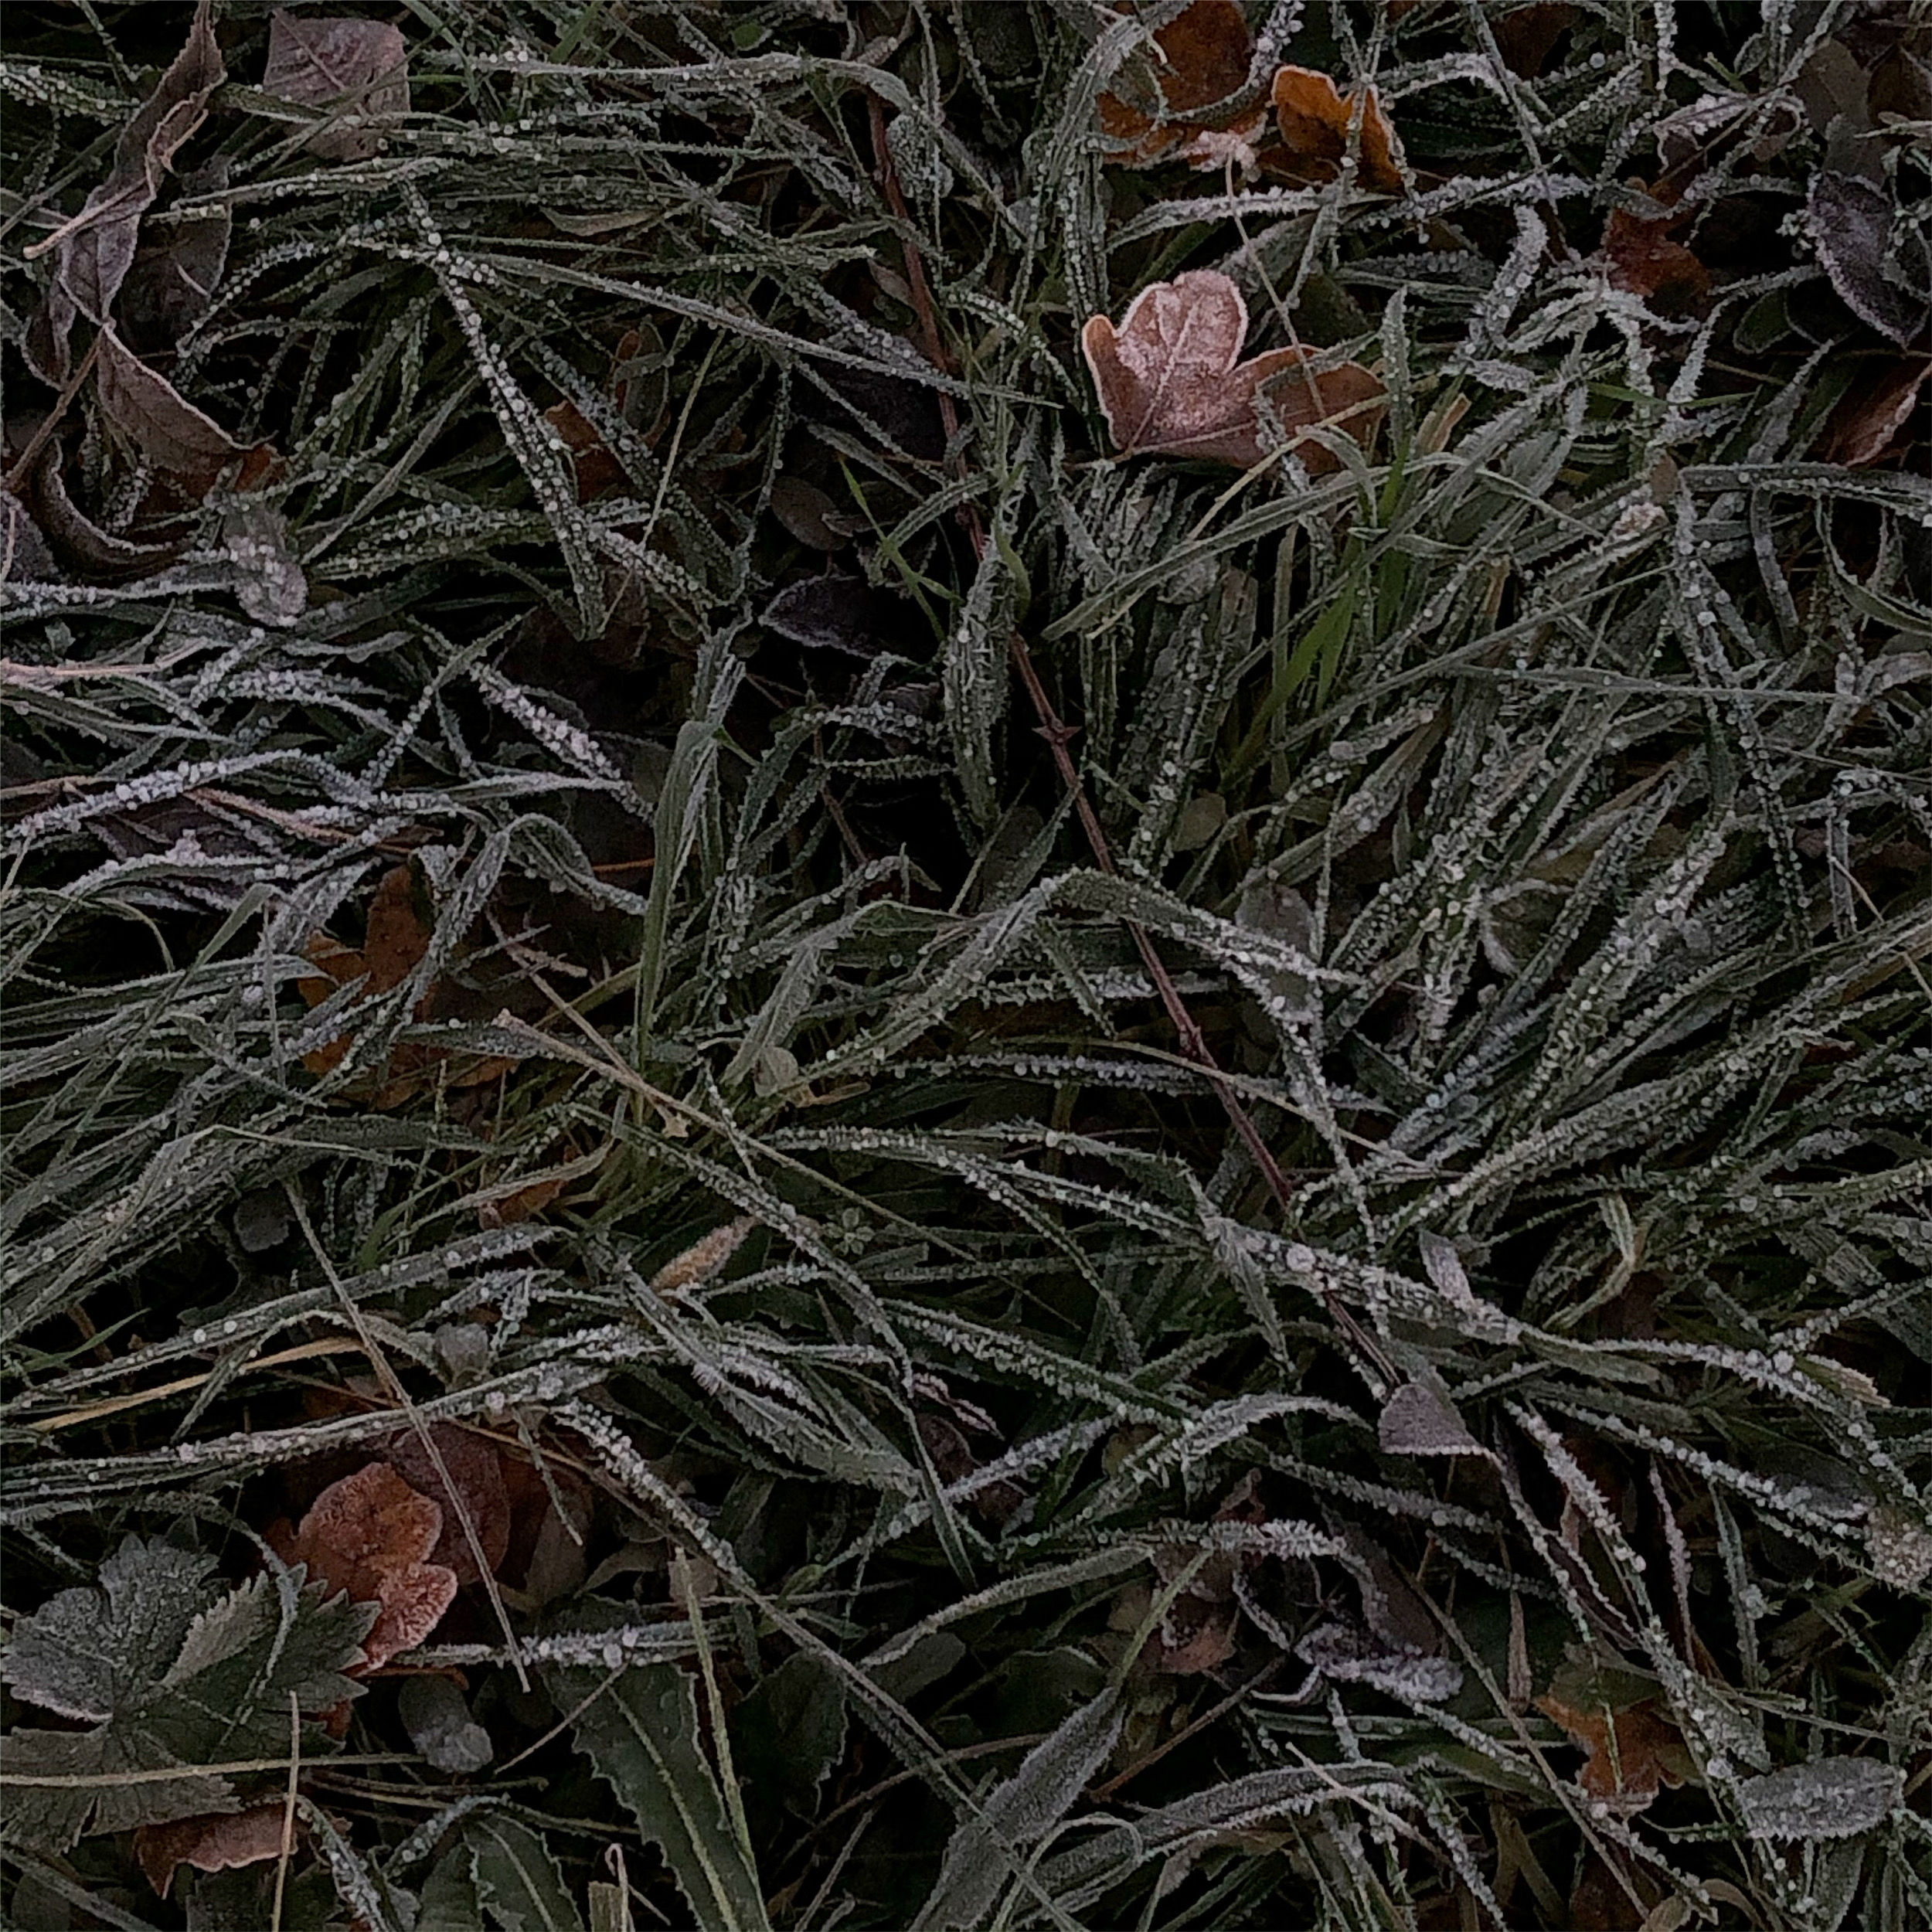 Frozen ground